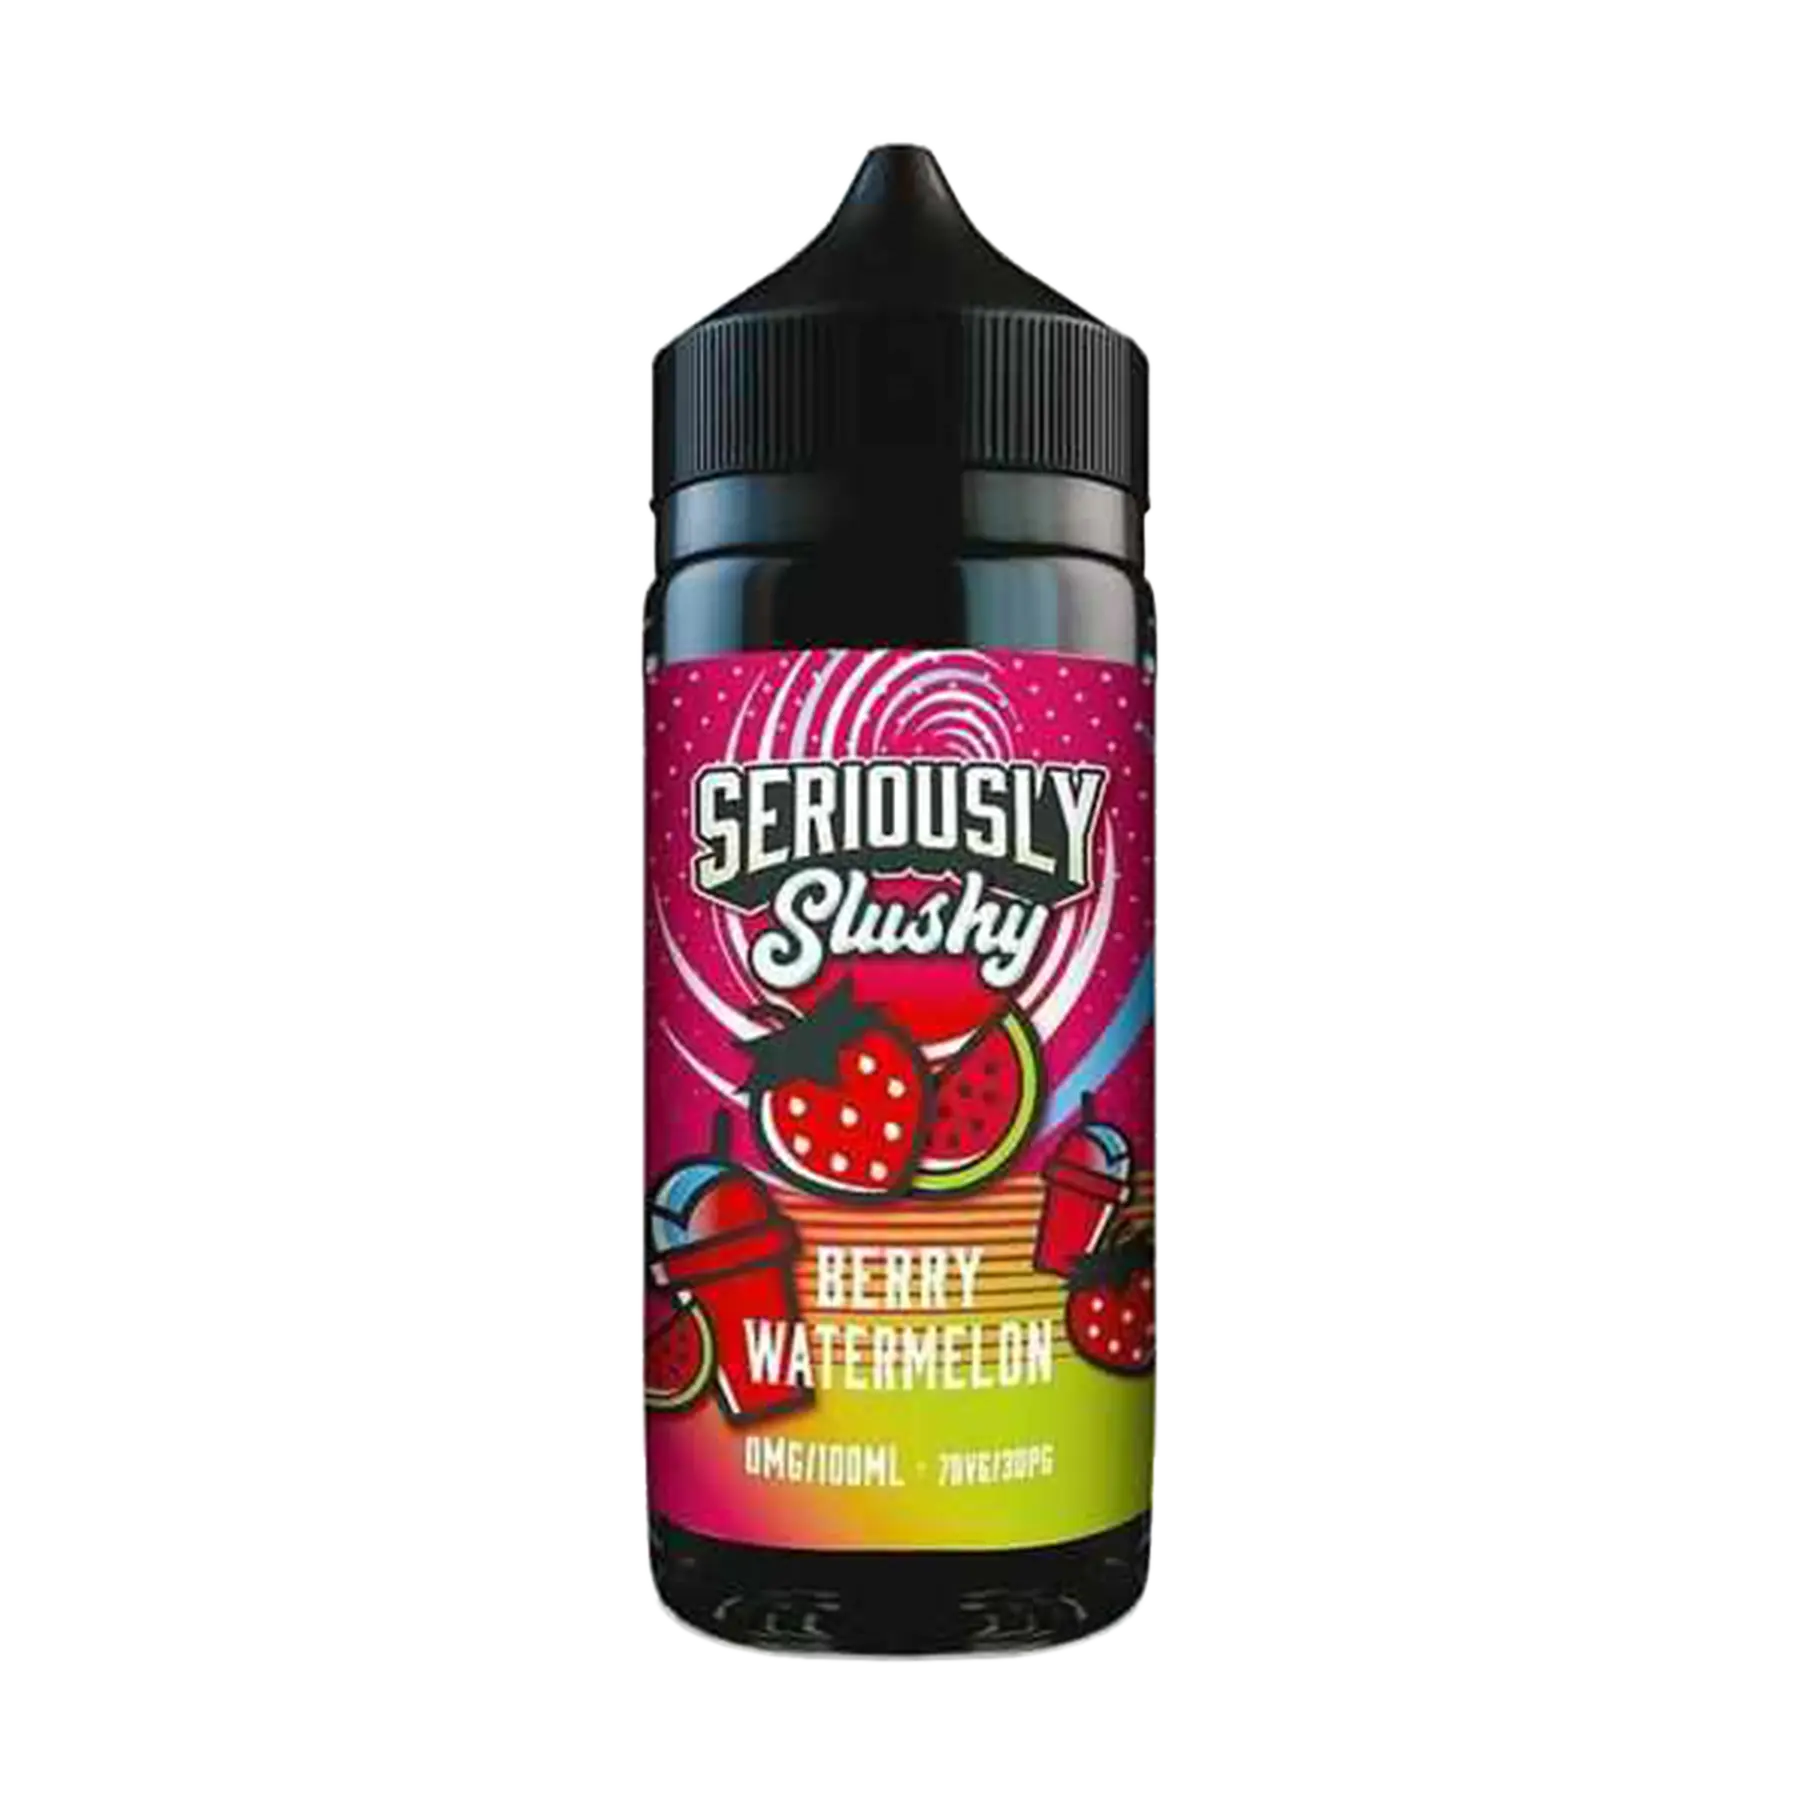 Doozy Seriously Slushy Berry Watermelon 100ml E Liquid Shortfill